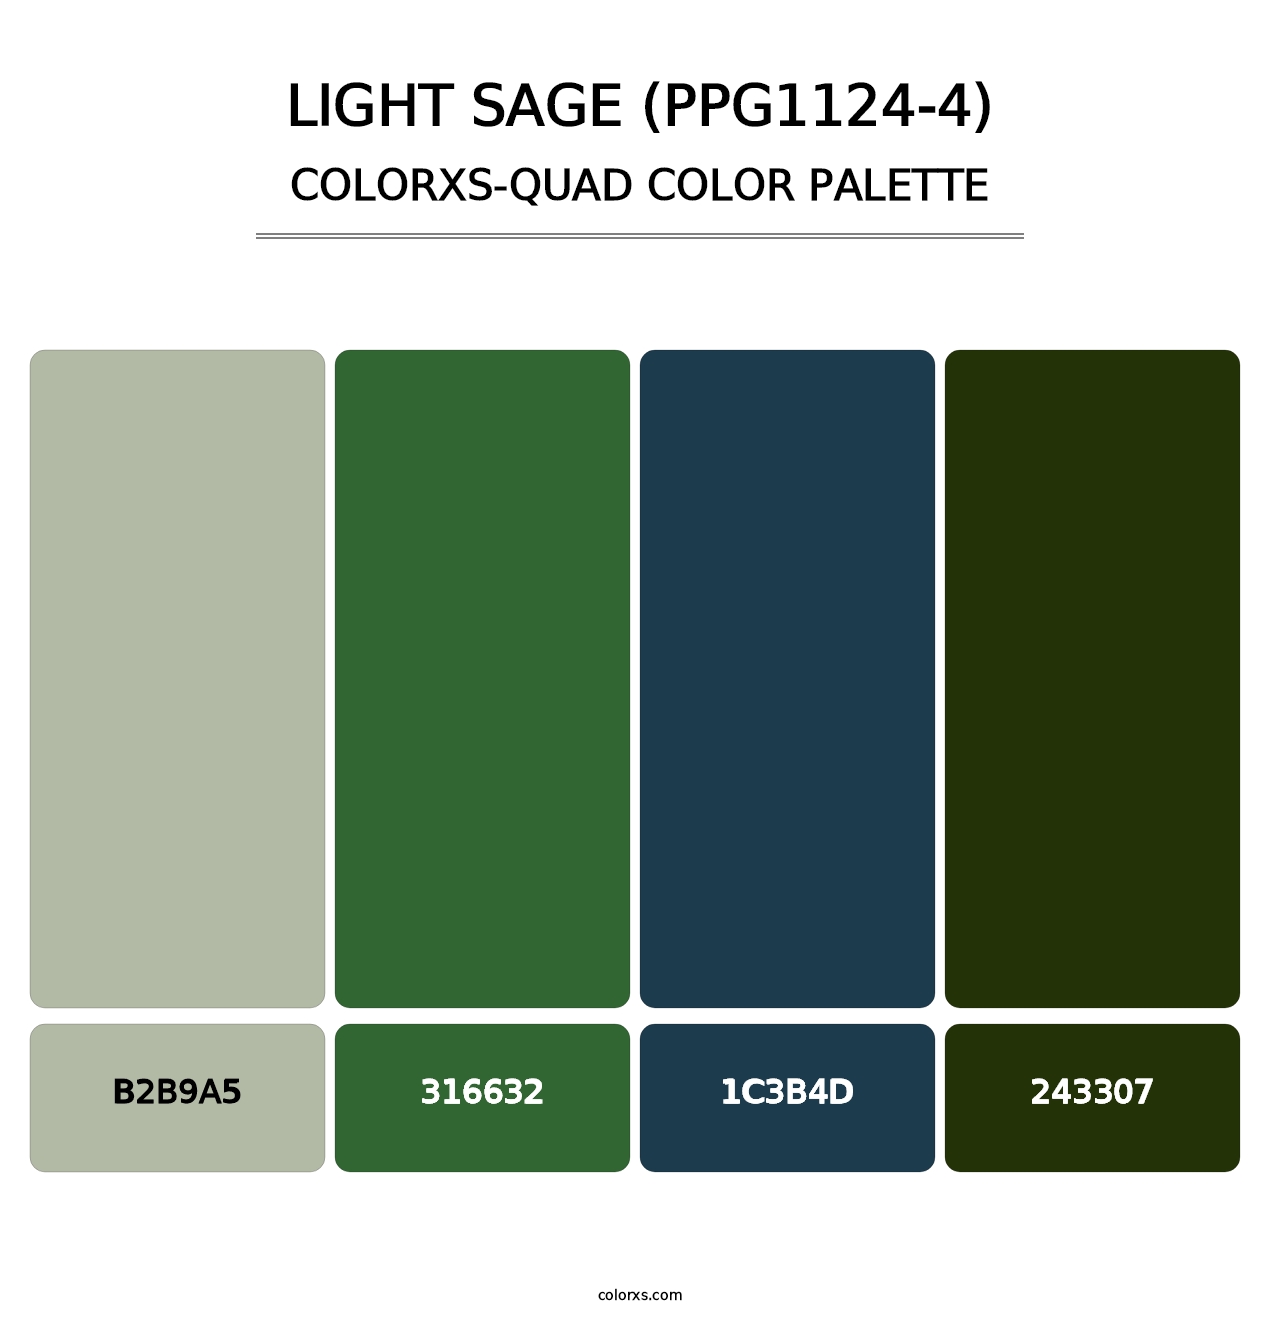 Light Sage (PPG1124-4) - Colorxs Quad Palette